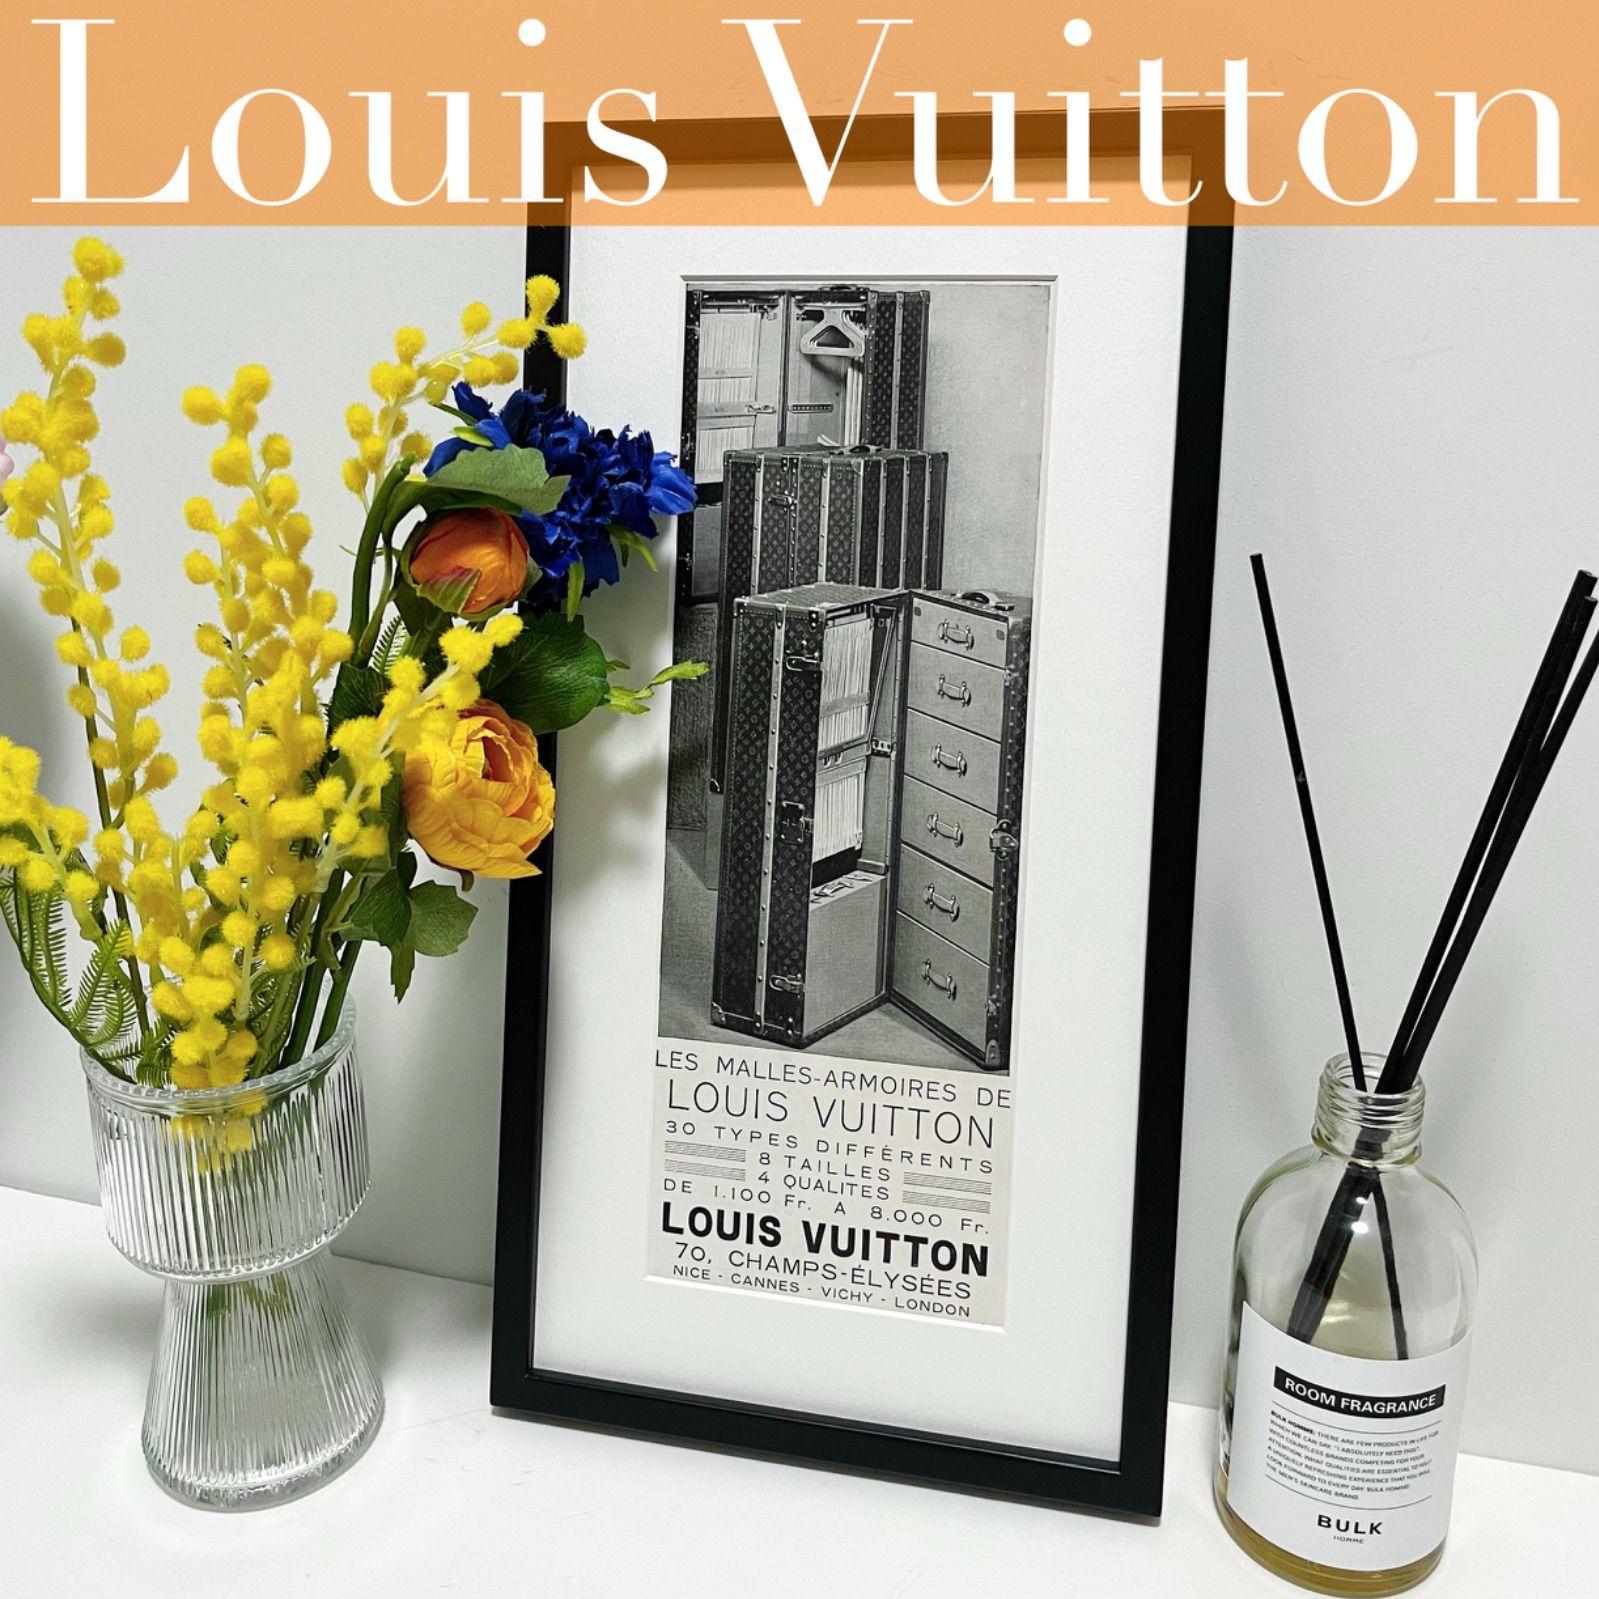 ＜1928 広告＞ Louis Vuitton ルイ・ヴィトン ポスター ヴィンテージ アートポスター ミニフレーム フレーム付き インテリア モダン  おしゃれ かわいい 壁掛け ポップ レトロ モノトーン モノクロ